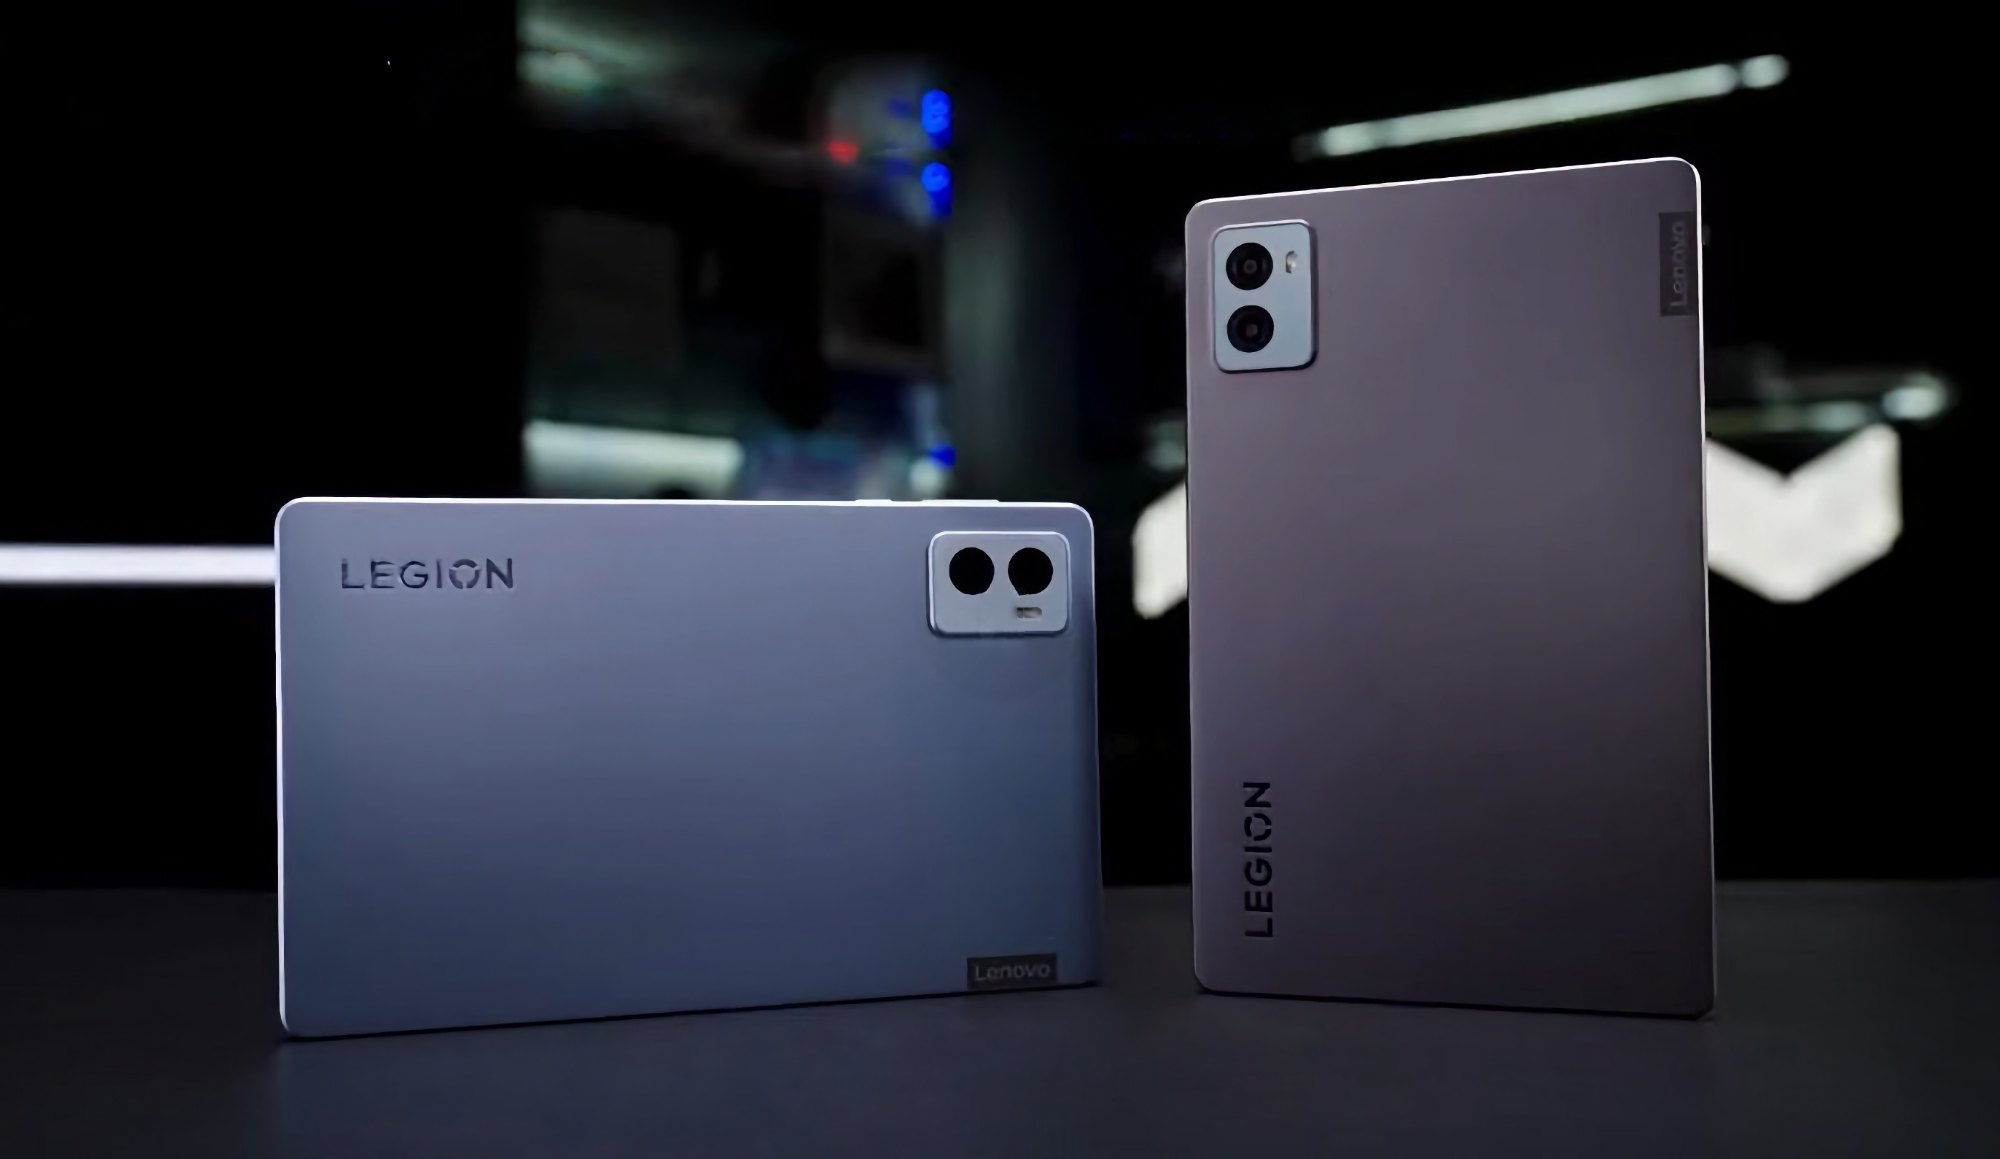 Días antes del anuncio: el Lenovo Legion Y700 (2023) con chip Snapdragon 8+ Gen 1 y dos puertos USB-C ha aparecido en un vídeo